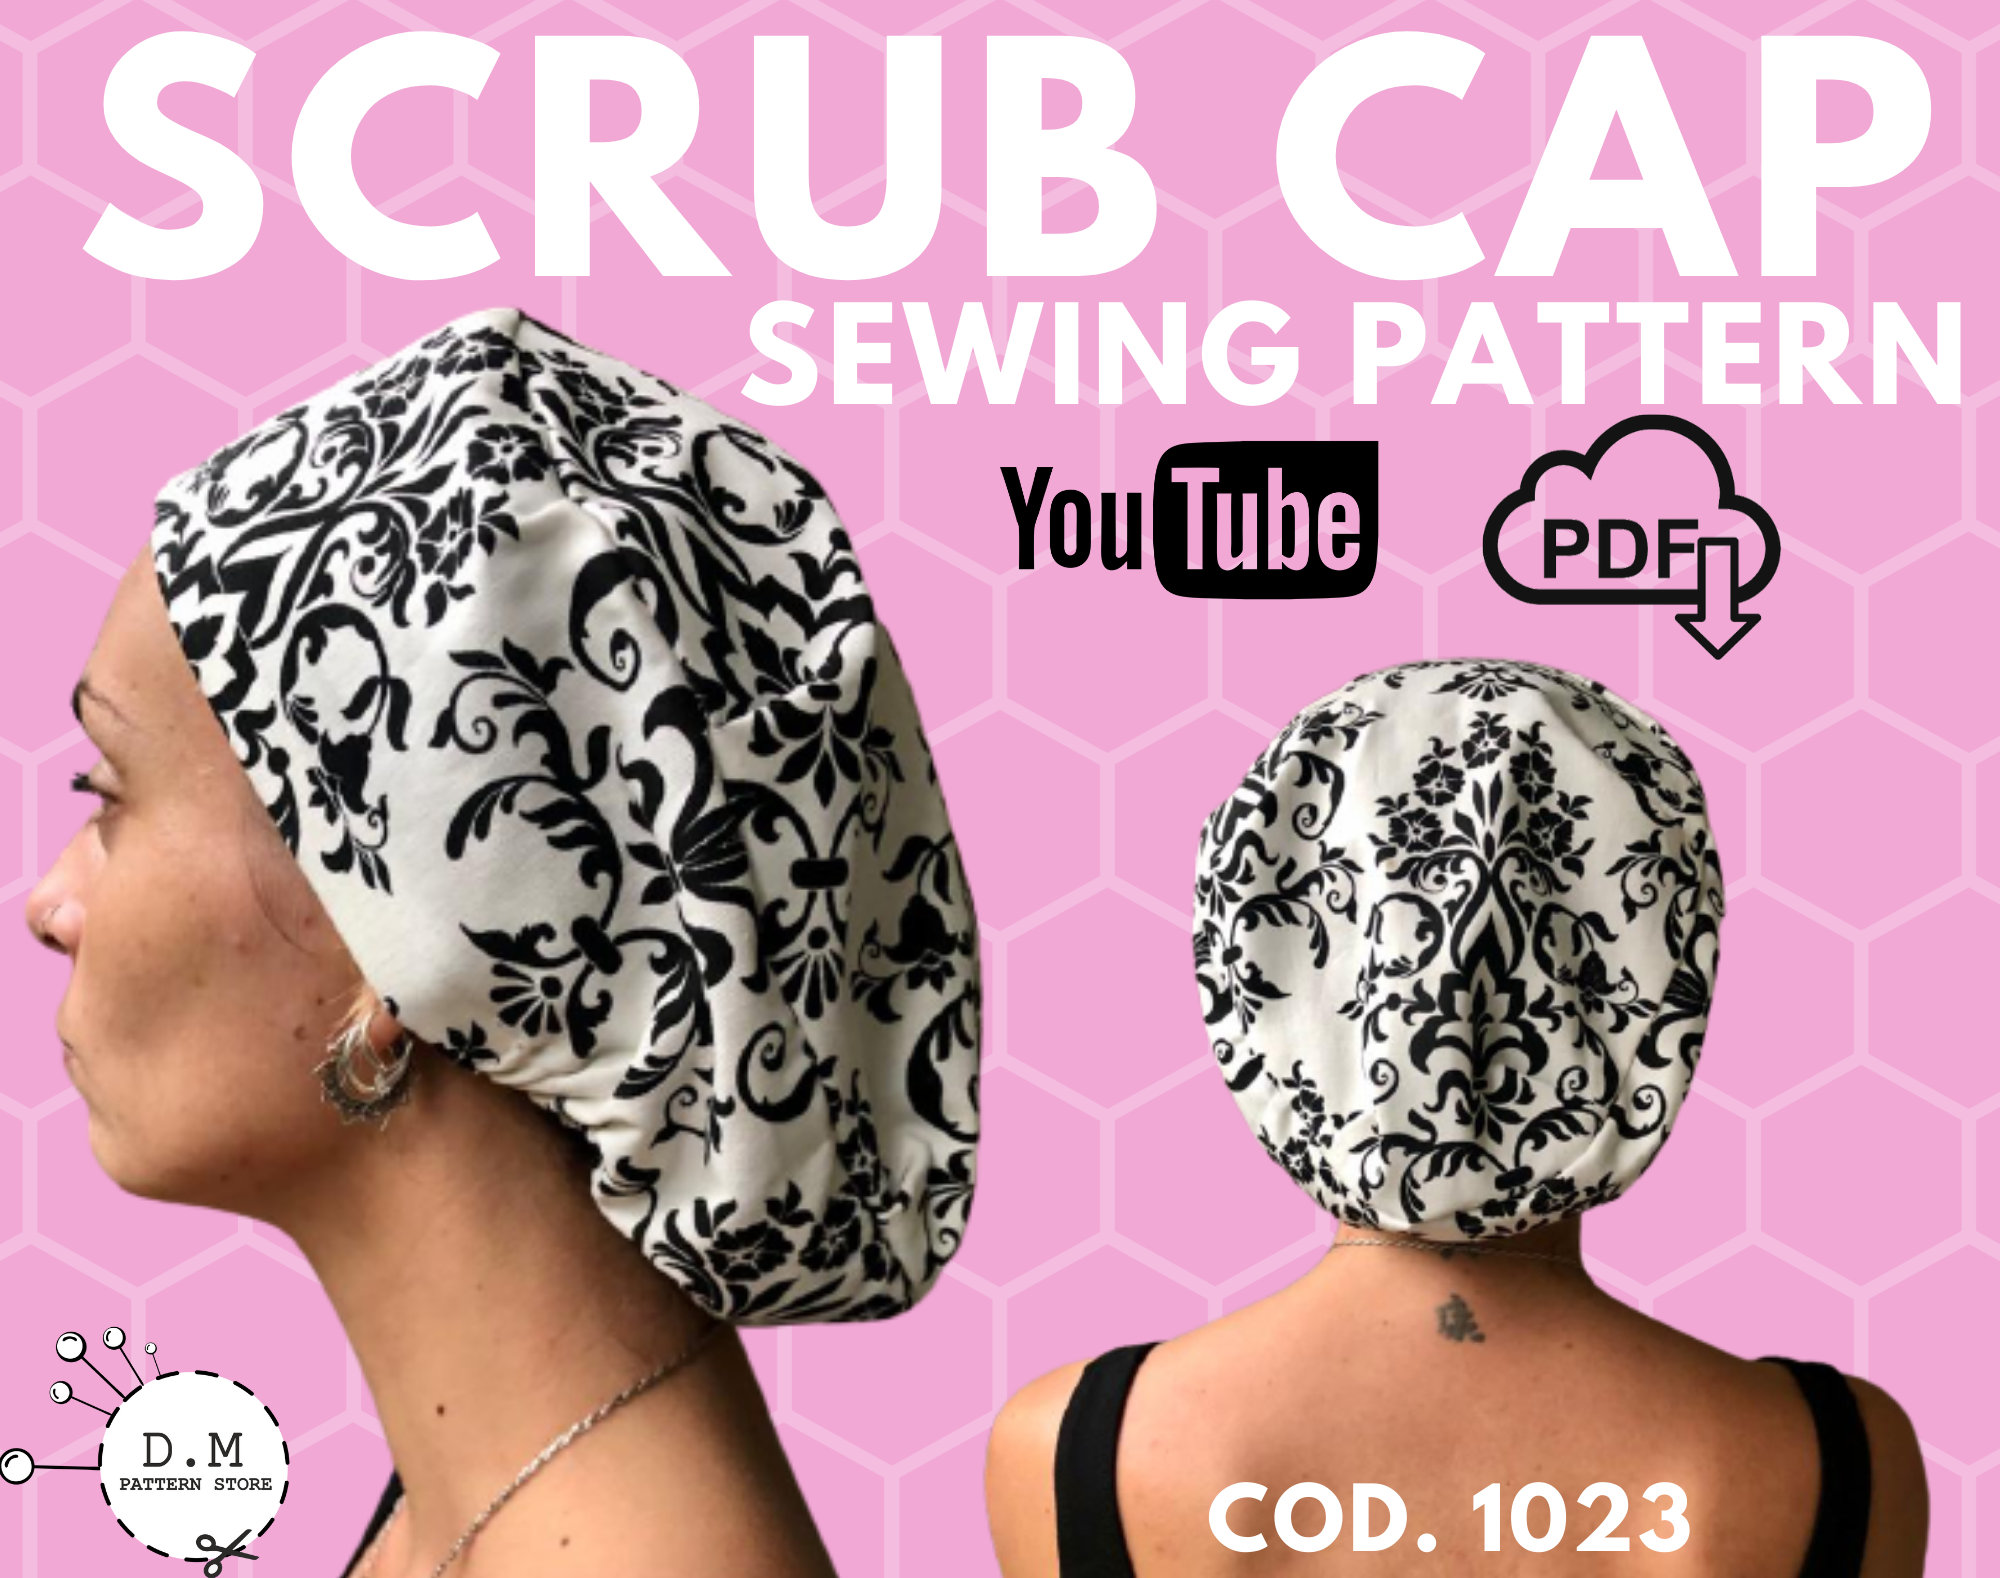 Scrub Cap Classic PDF Pattern Download, Nurse Hat, Scrub Cap Men, Capu